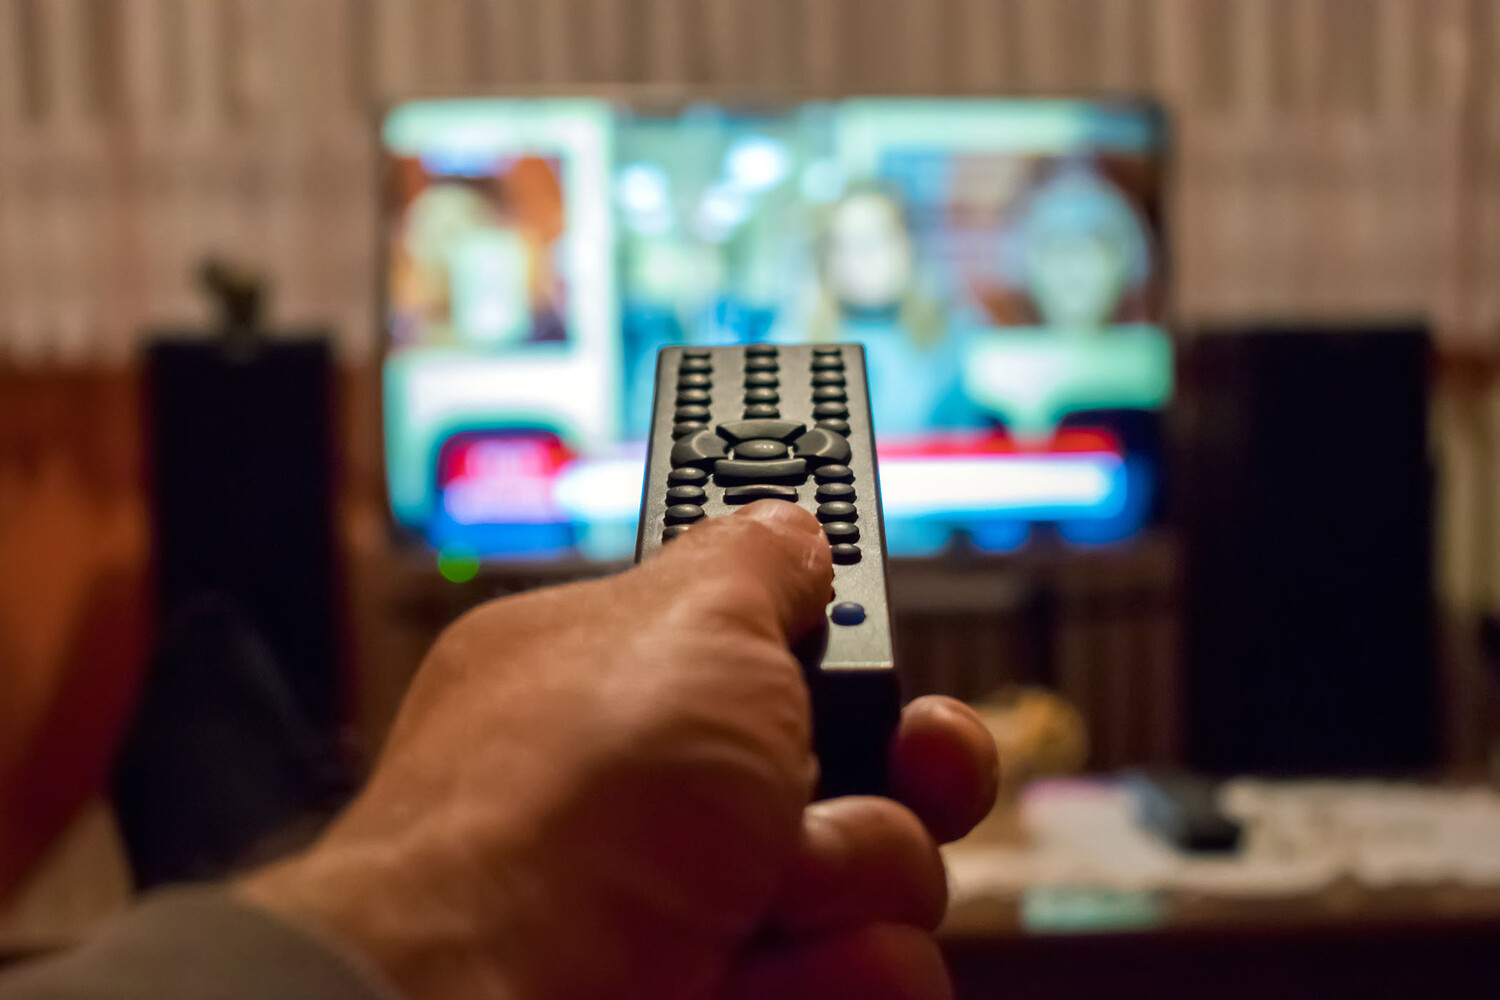 Сбер представил новое поколение умной ТВ-приставки